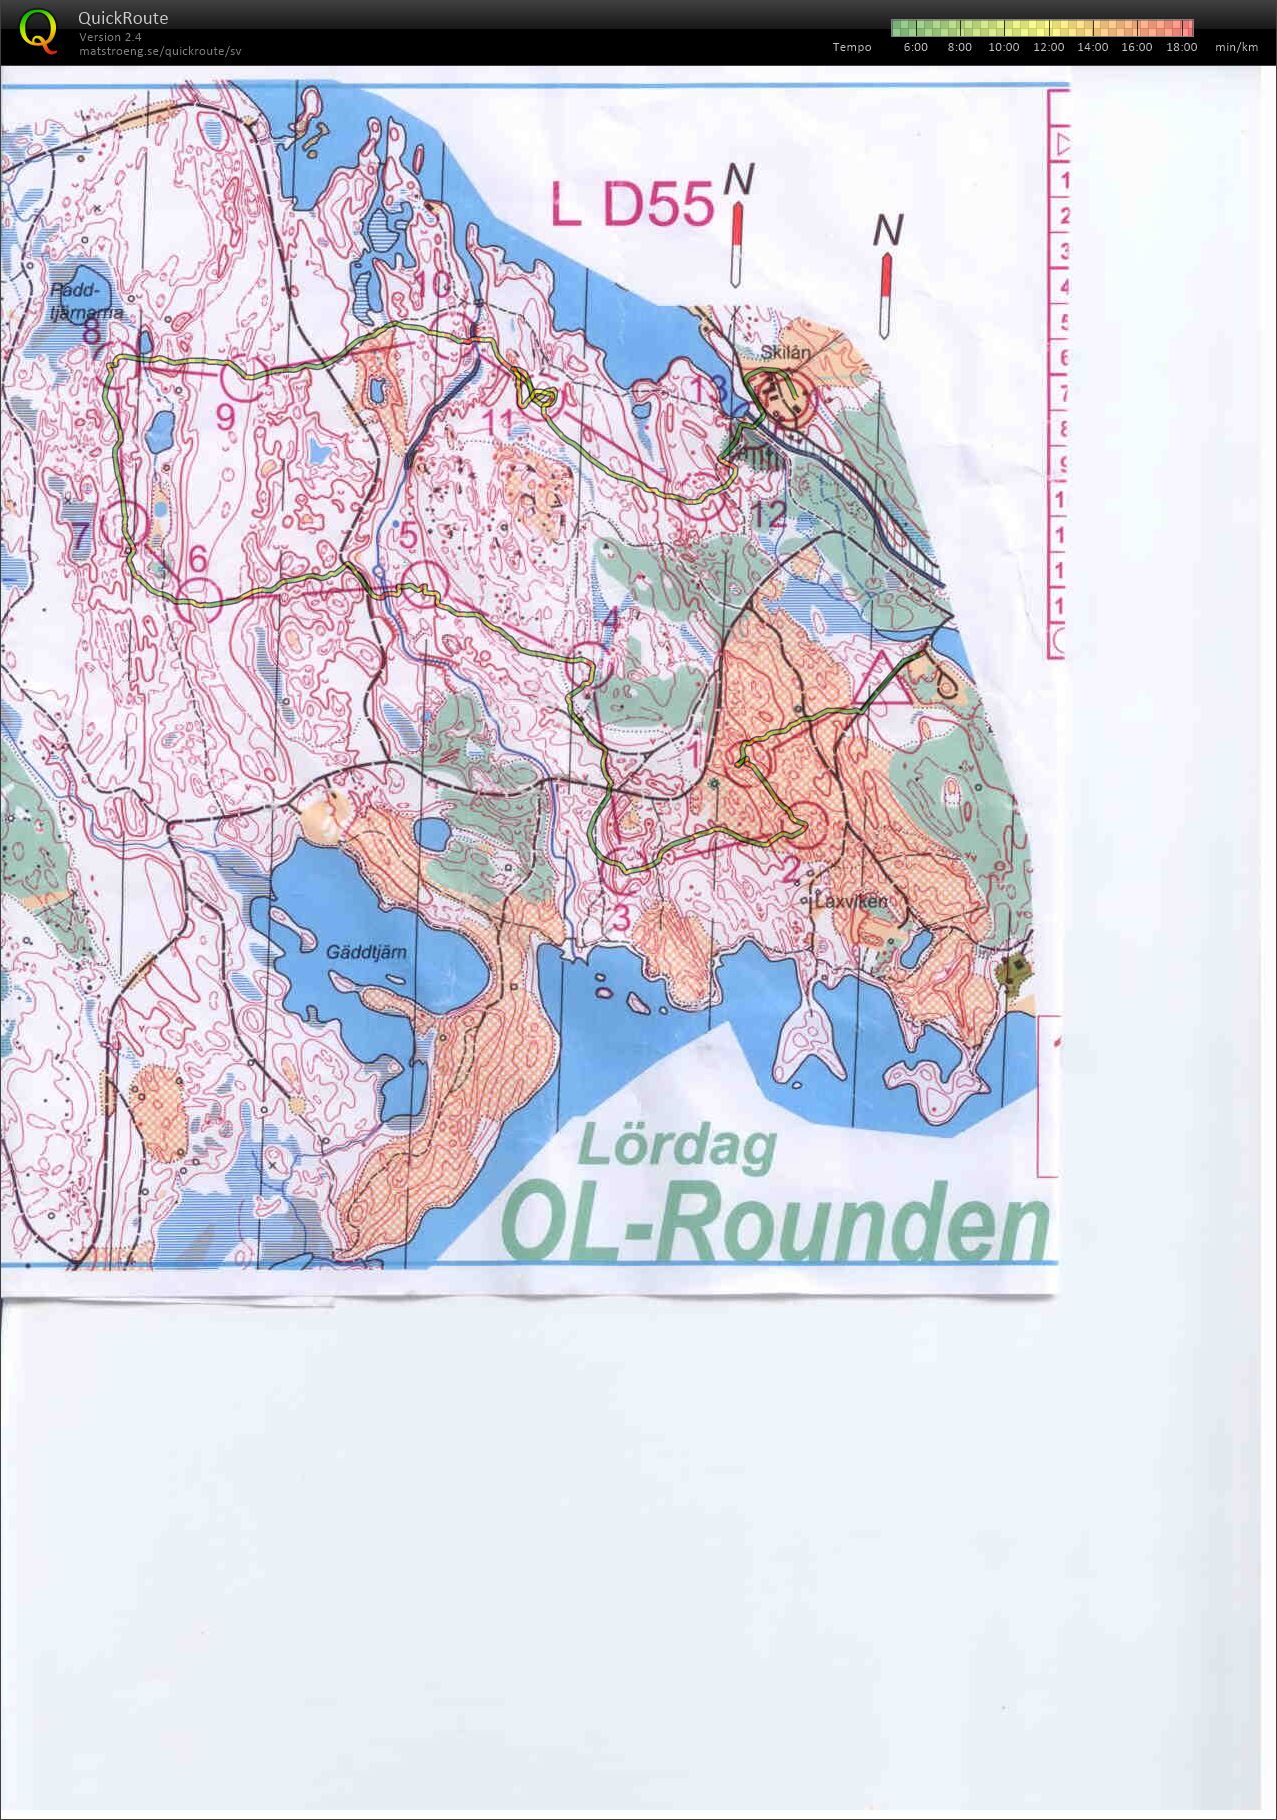 OL-rounden lång (15.08.2015)